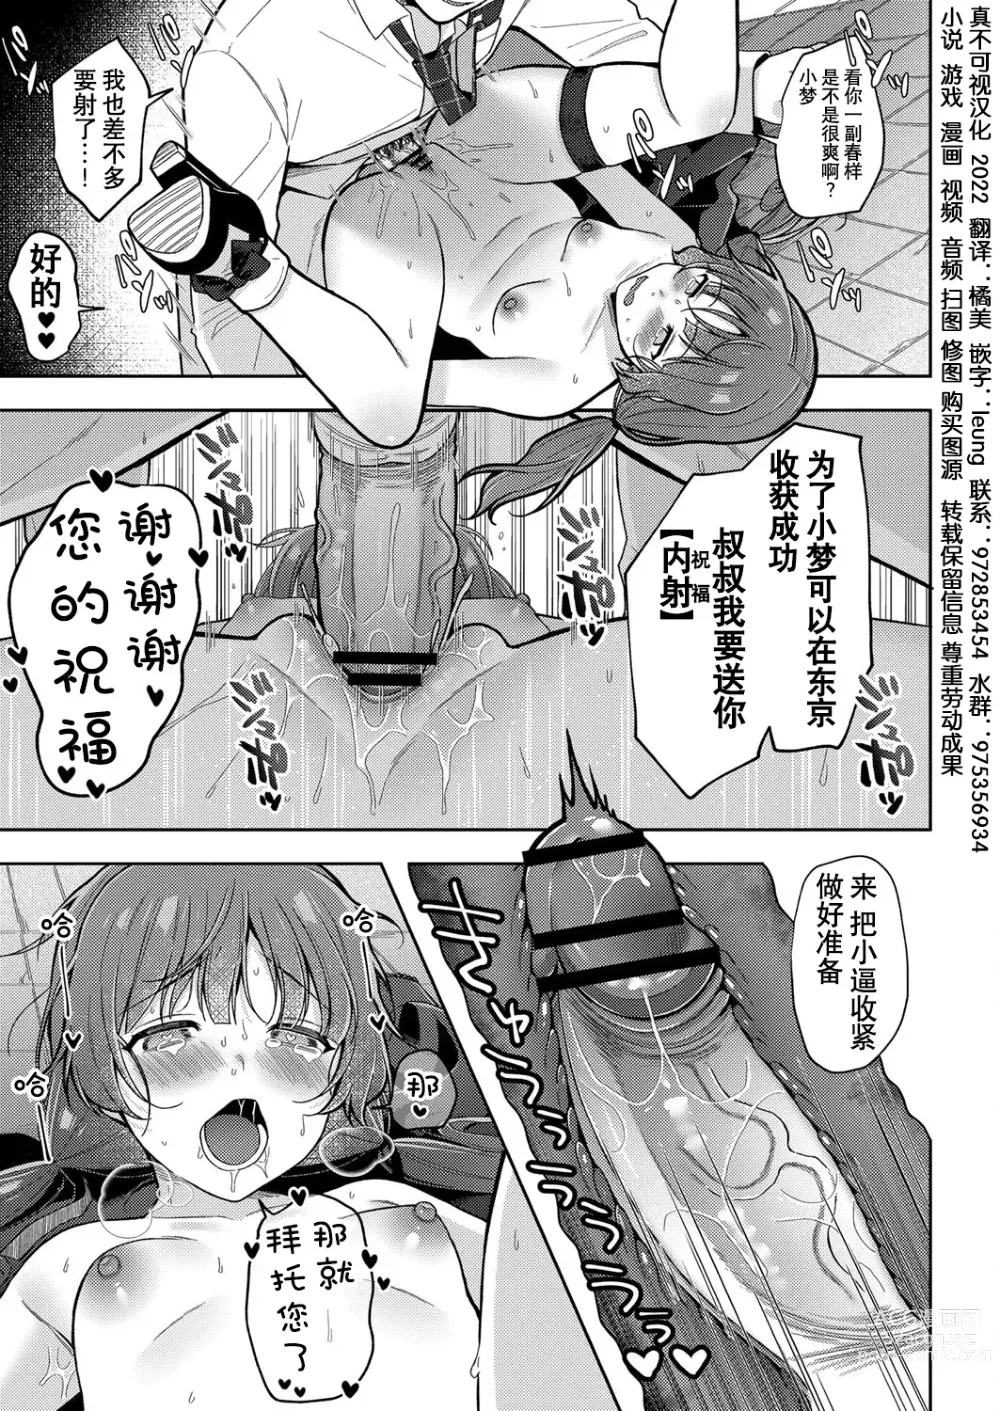 Page 27 of manga Yumemiru Masegaki ~Hatsudori Debut~